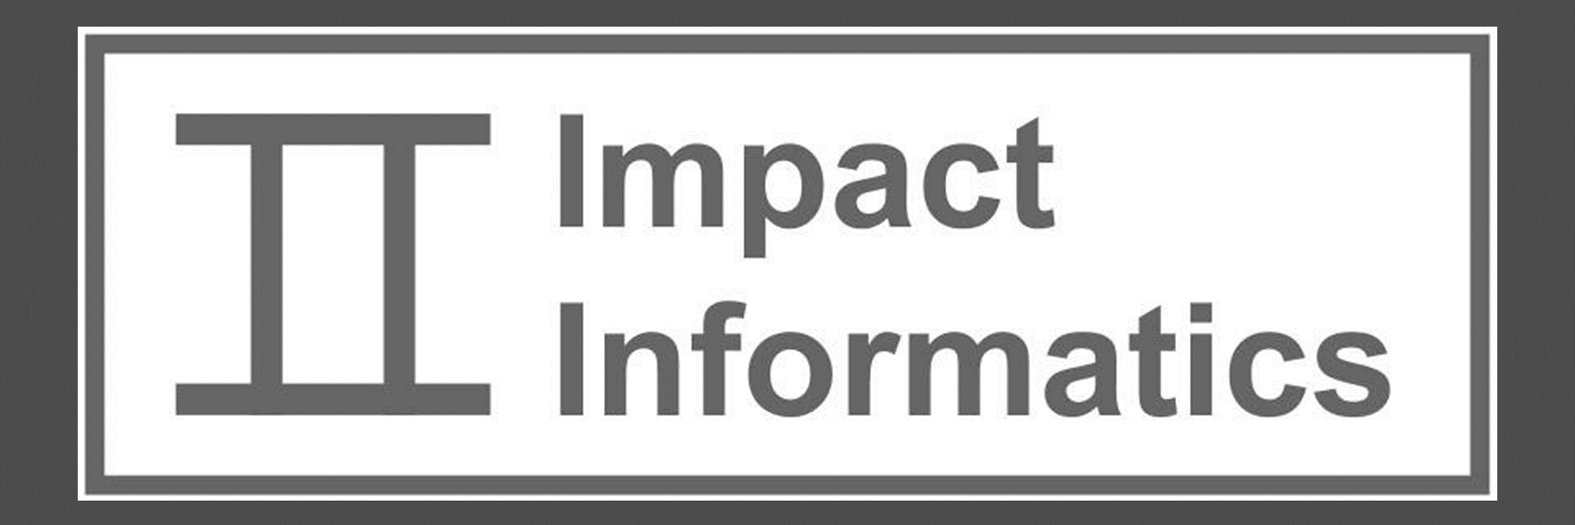 Impact Informatics